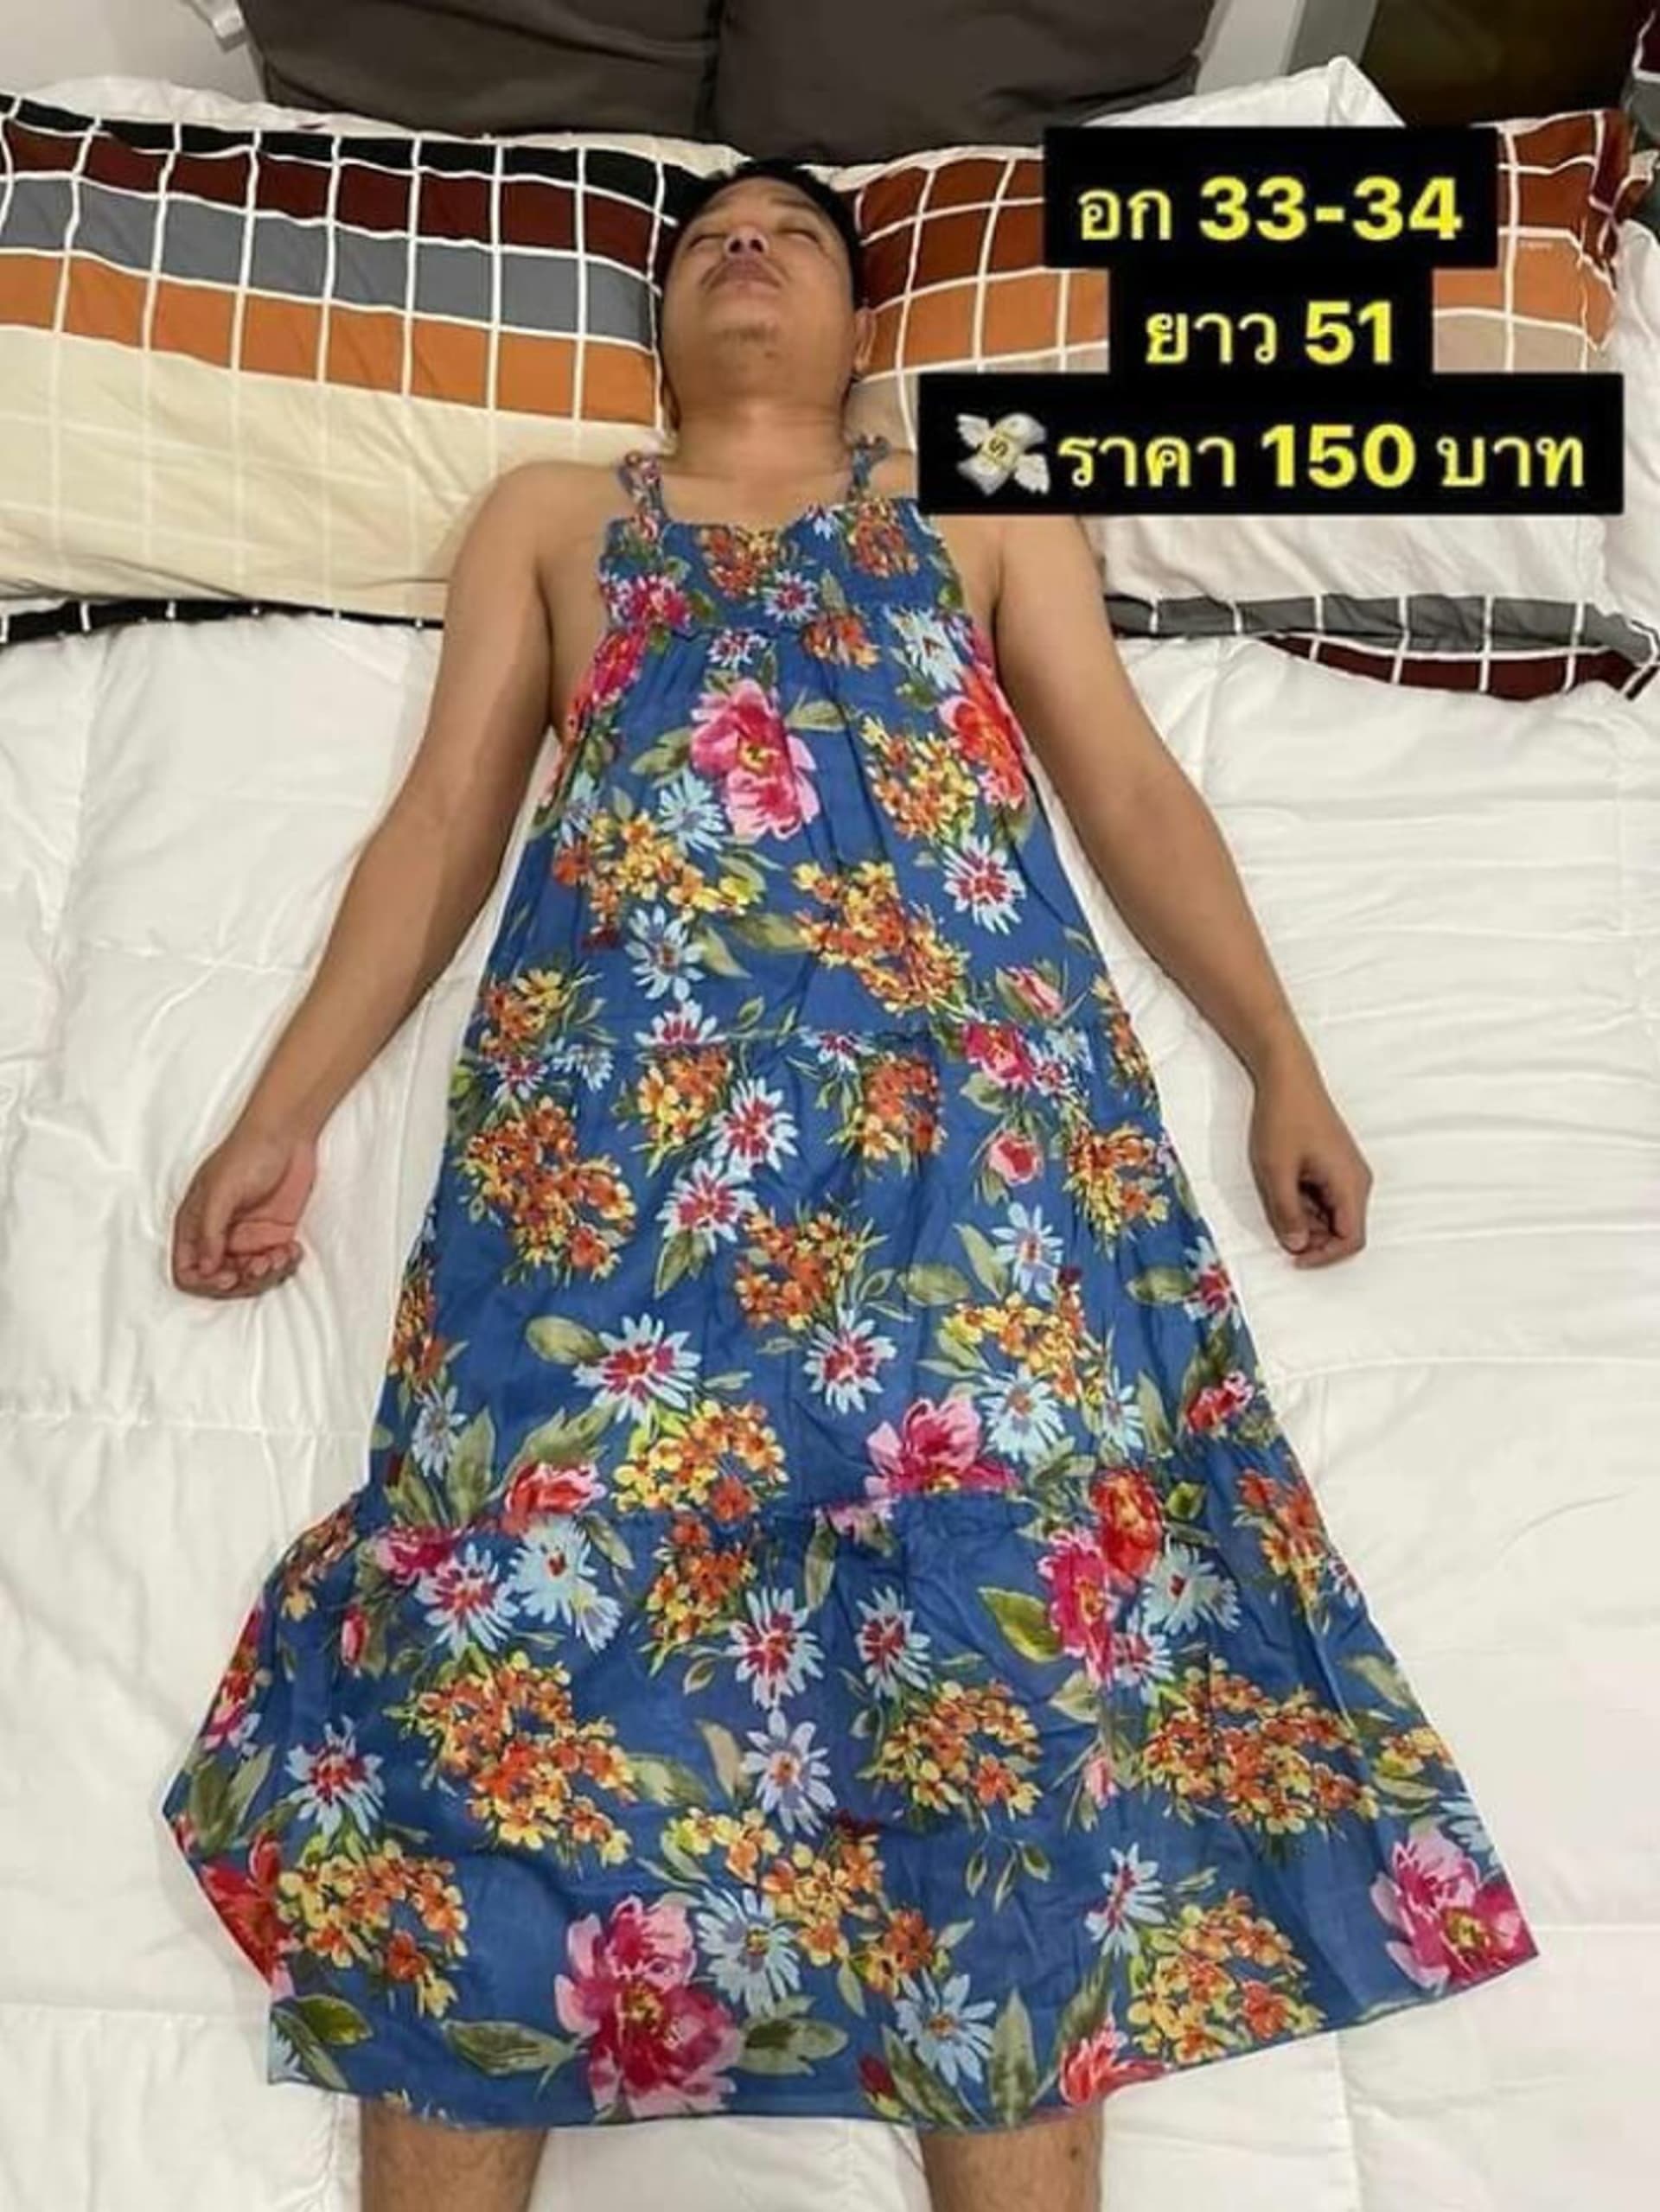 Žena prodává své oblečení na spícím manželovi 3